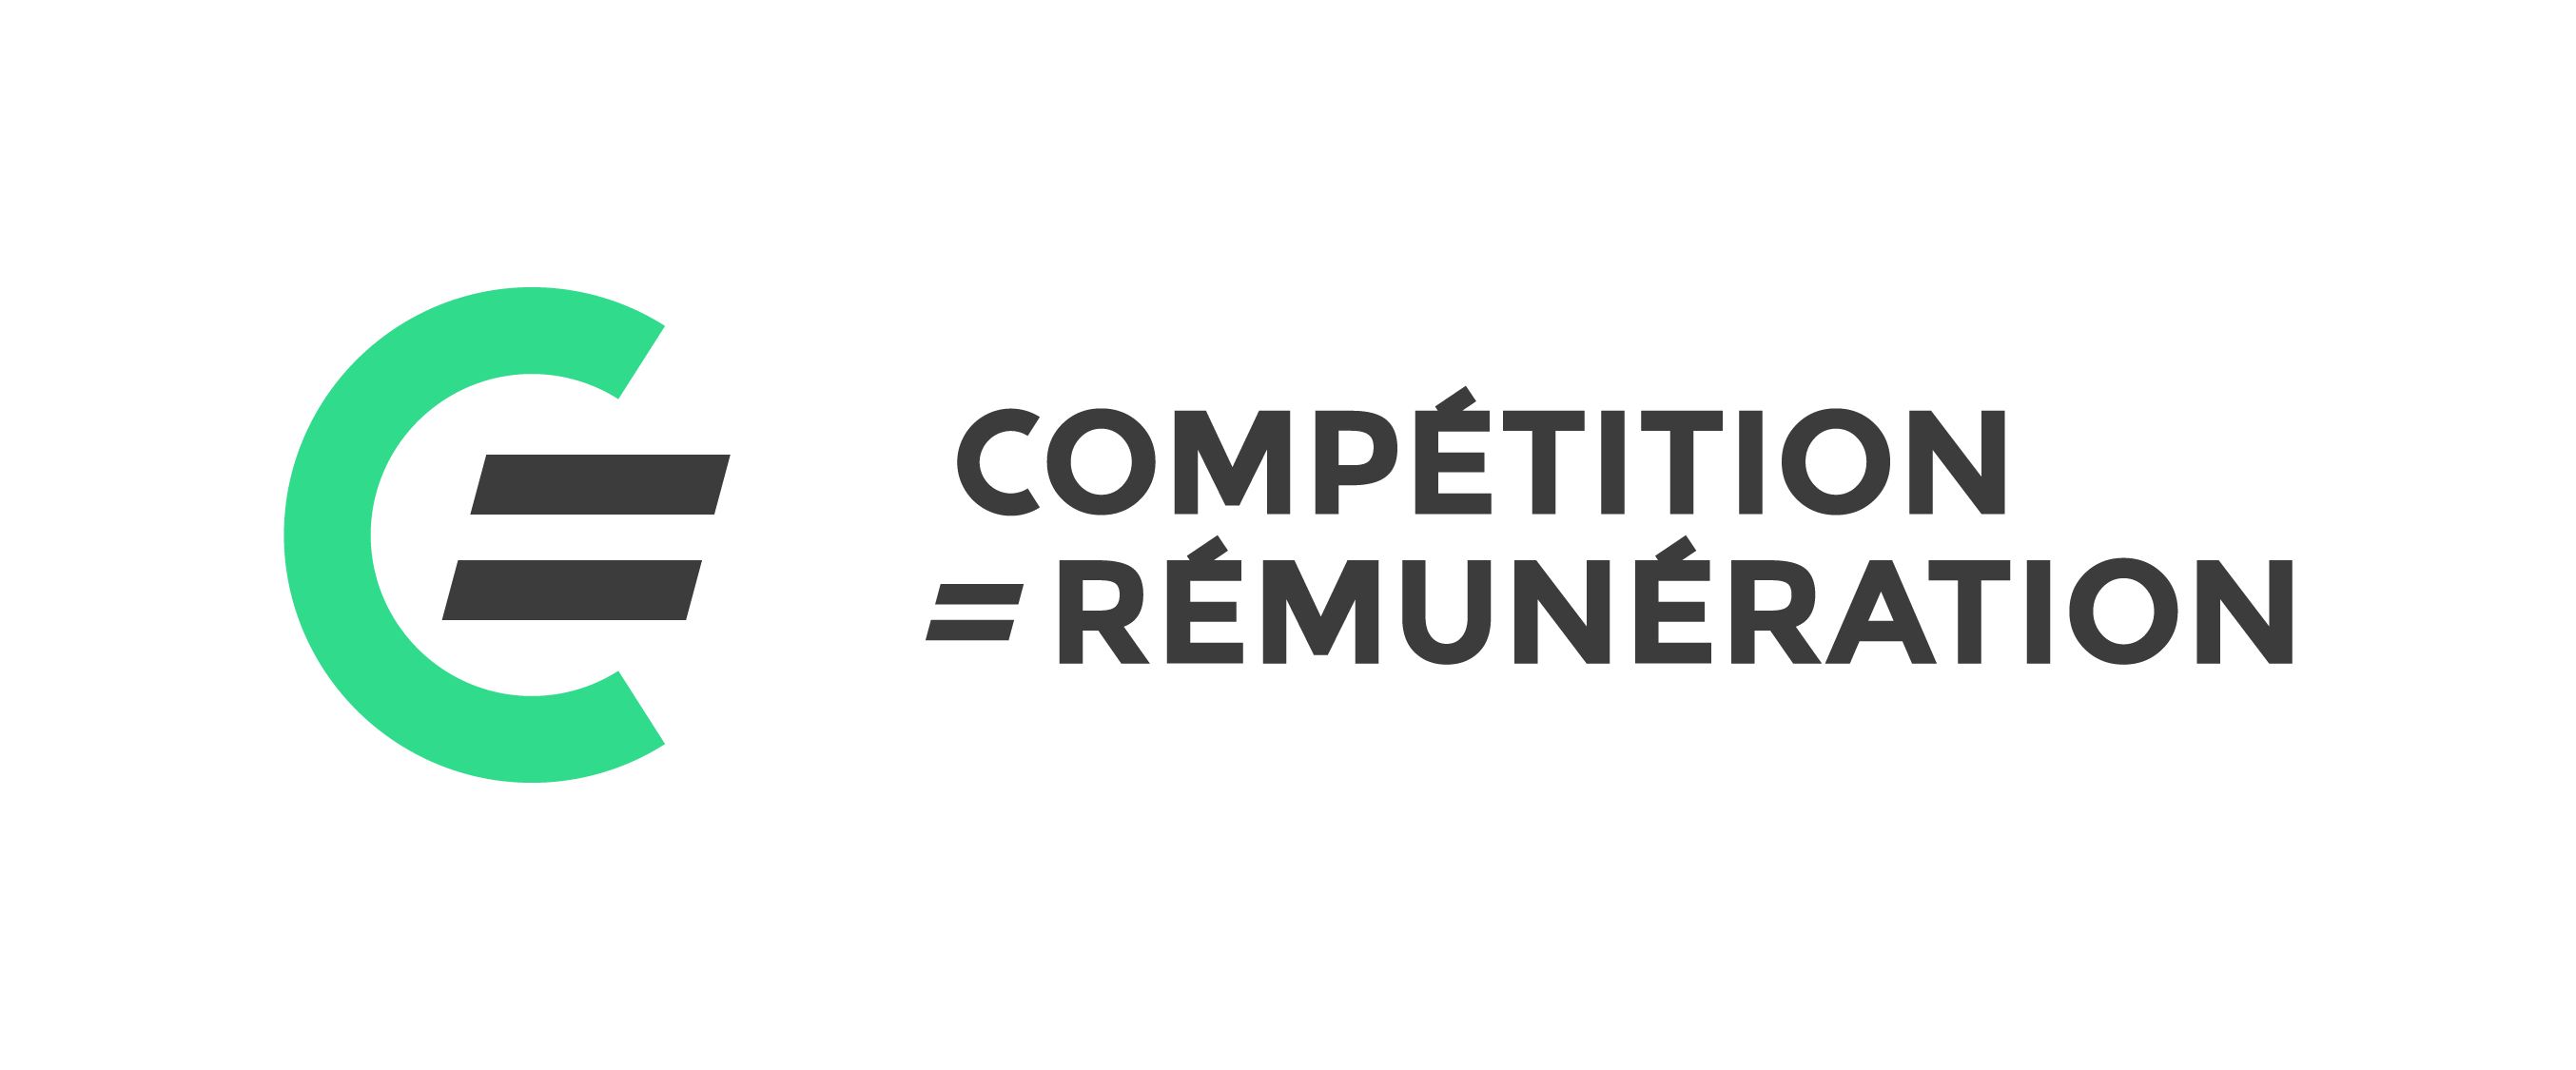 logo compétition = rémunération 